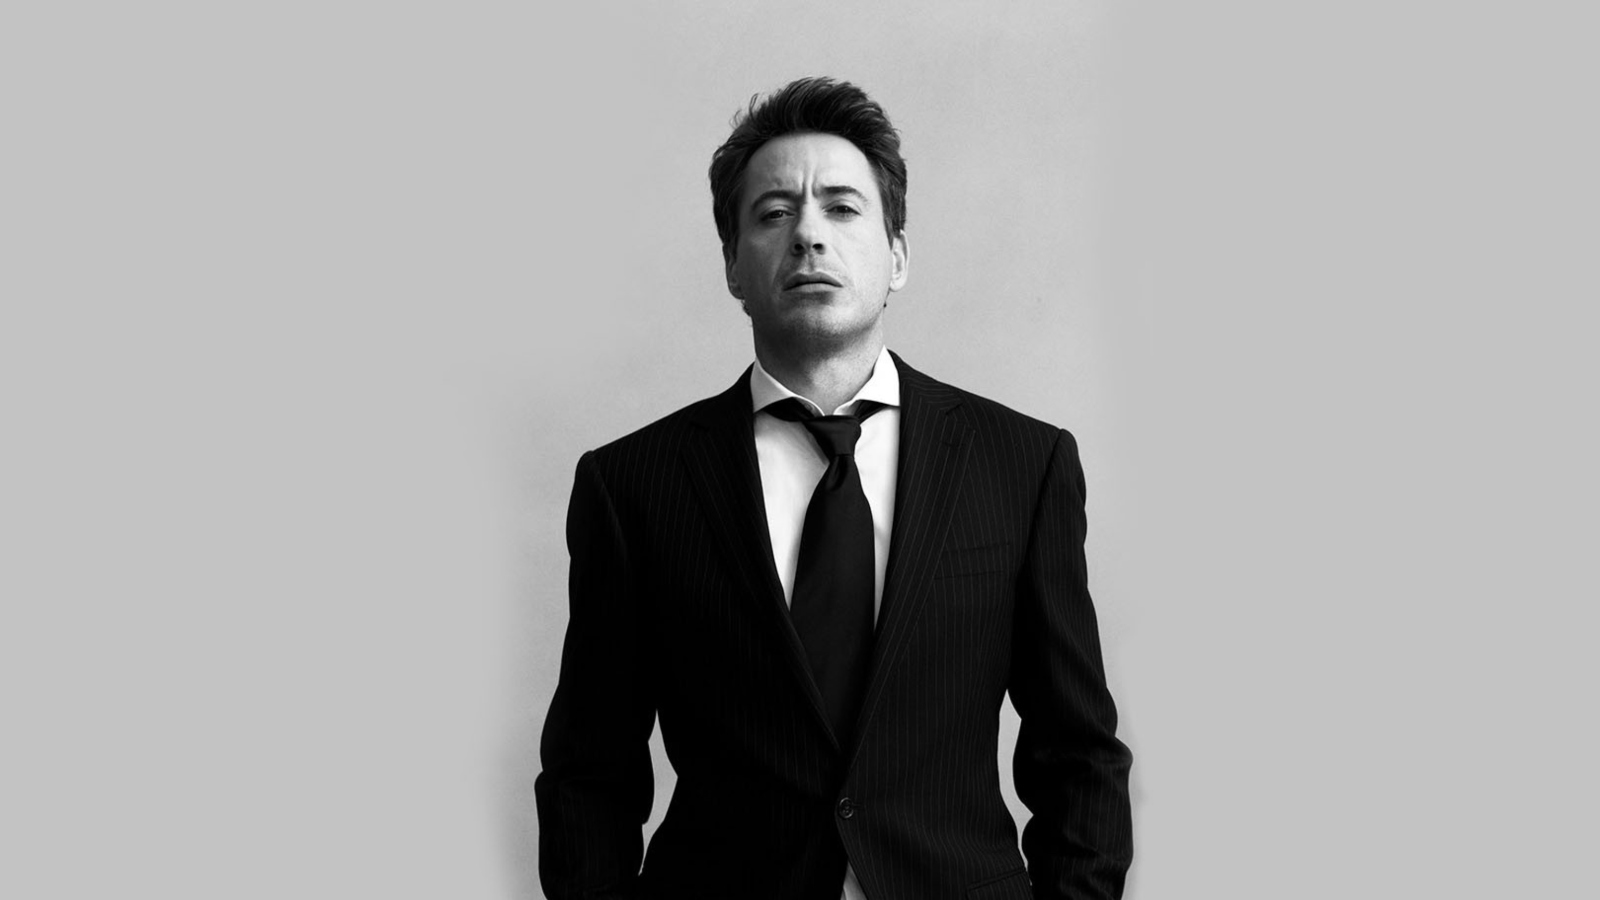 Das Robert Downey Junior Black Suit Wallpaper 1600x900